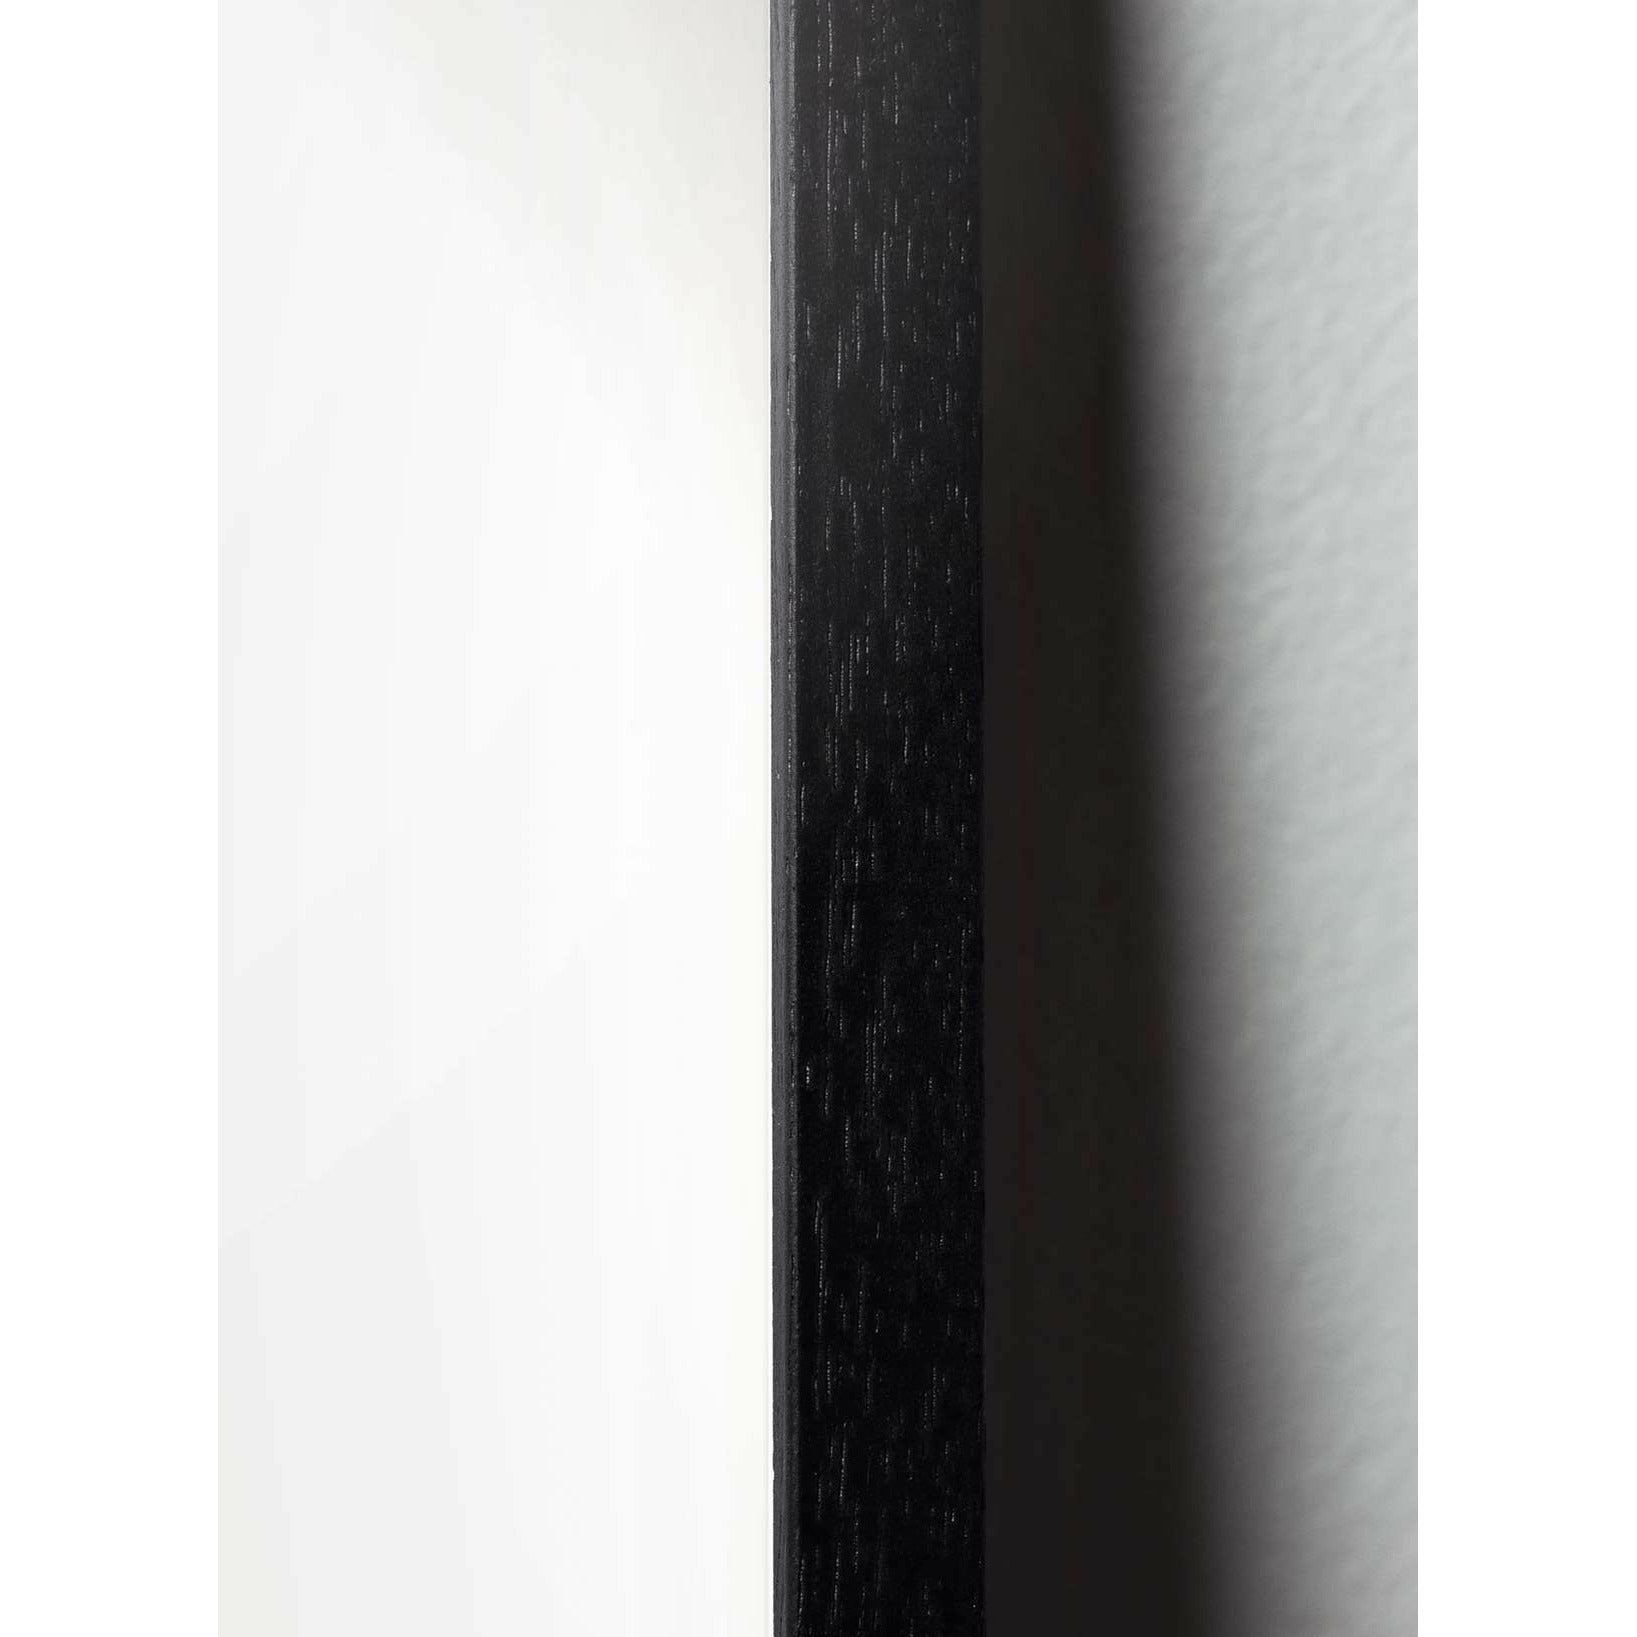 brainchild Ant Classic juliste, runko mustalla lakattuun puuhun 50x70 cm, valkoinen tausta